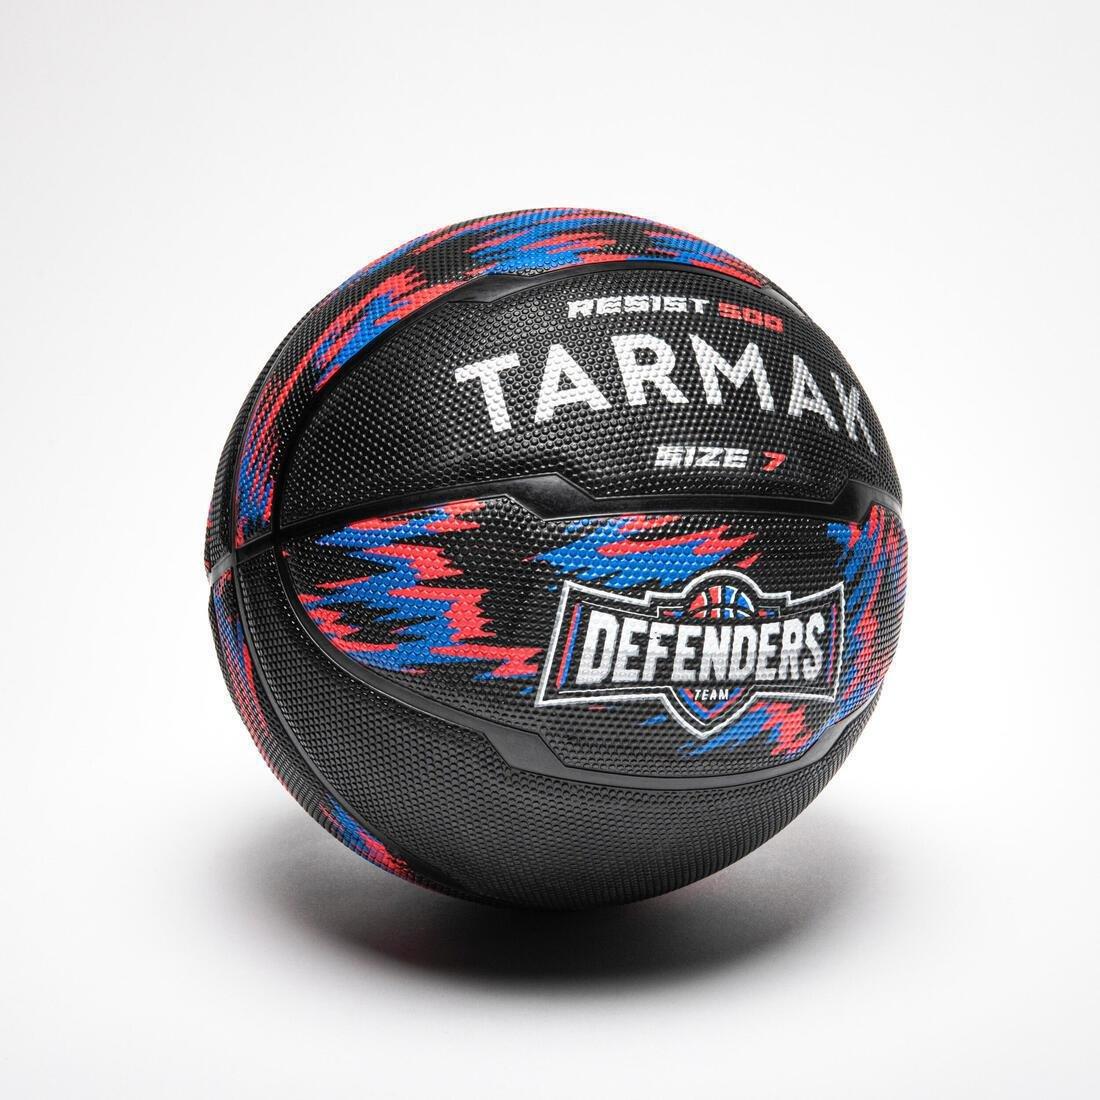 TARMAK - Men's Beginner Basketball R500